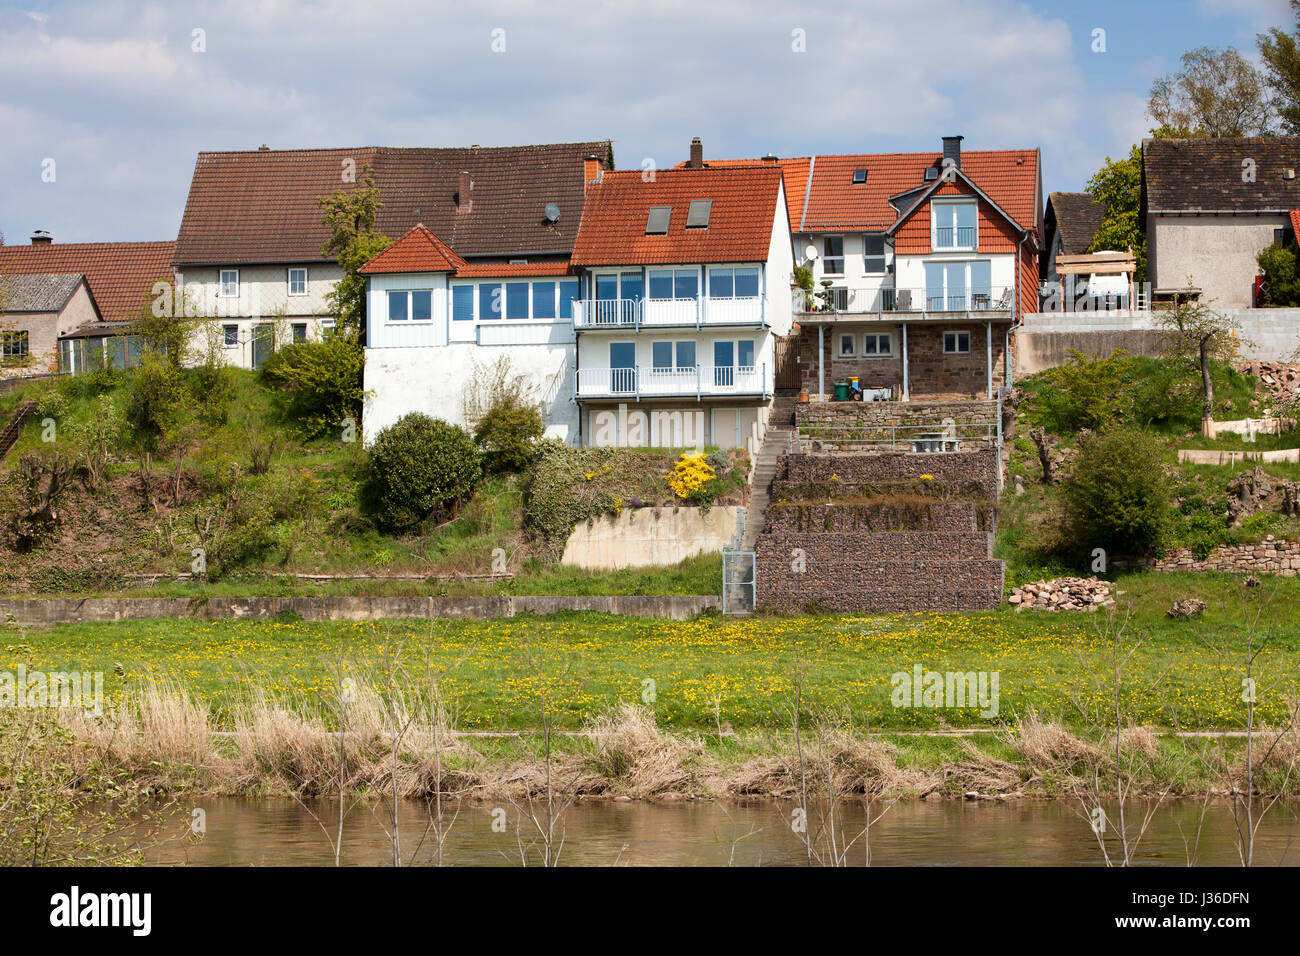 Parte posteriore del case sulle rive del fiume Weser, Bodenfelde, Distretto di Northeim, Bassa Sassonia, Germania Foto Stock